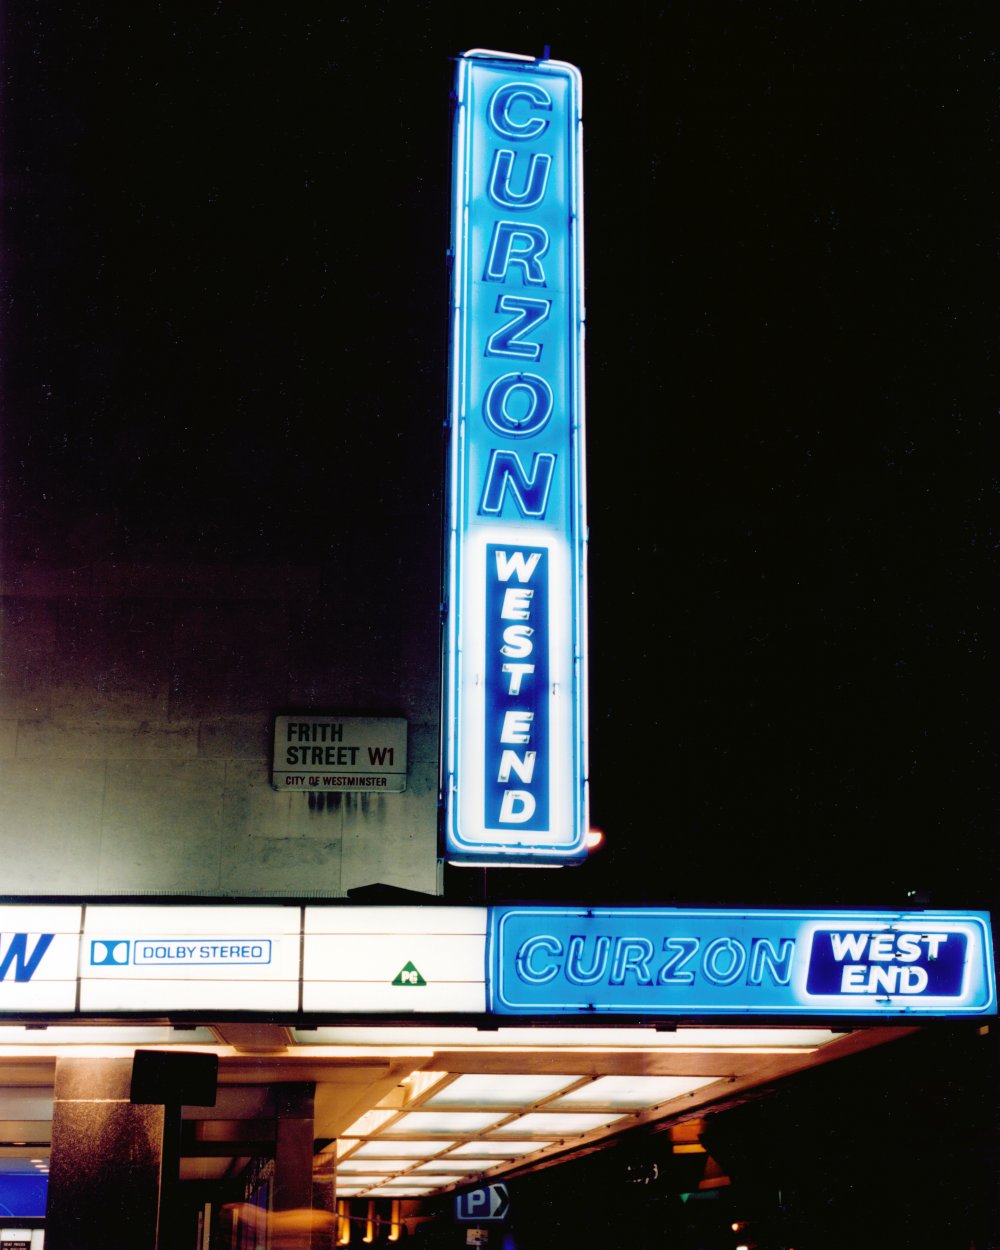 Curzon West End (now Curzon Soho), London, 1985